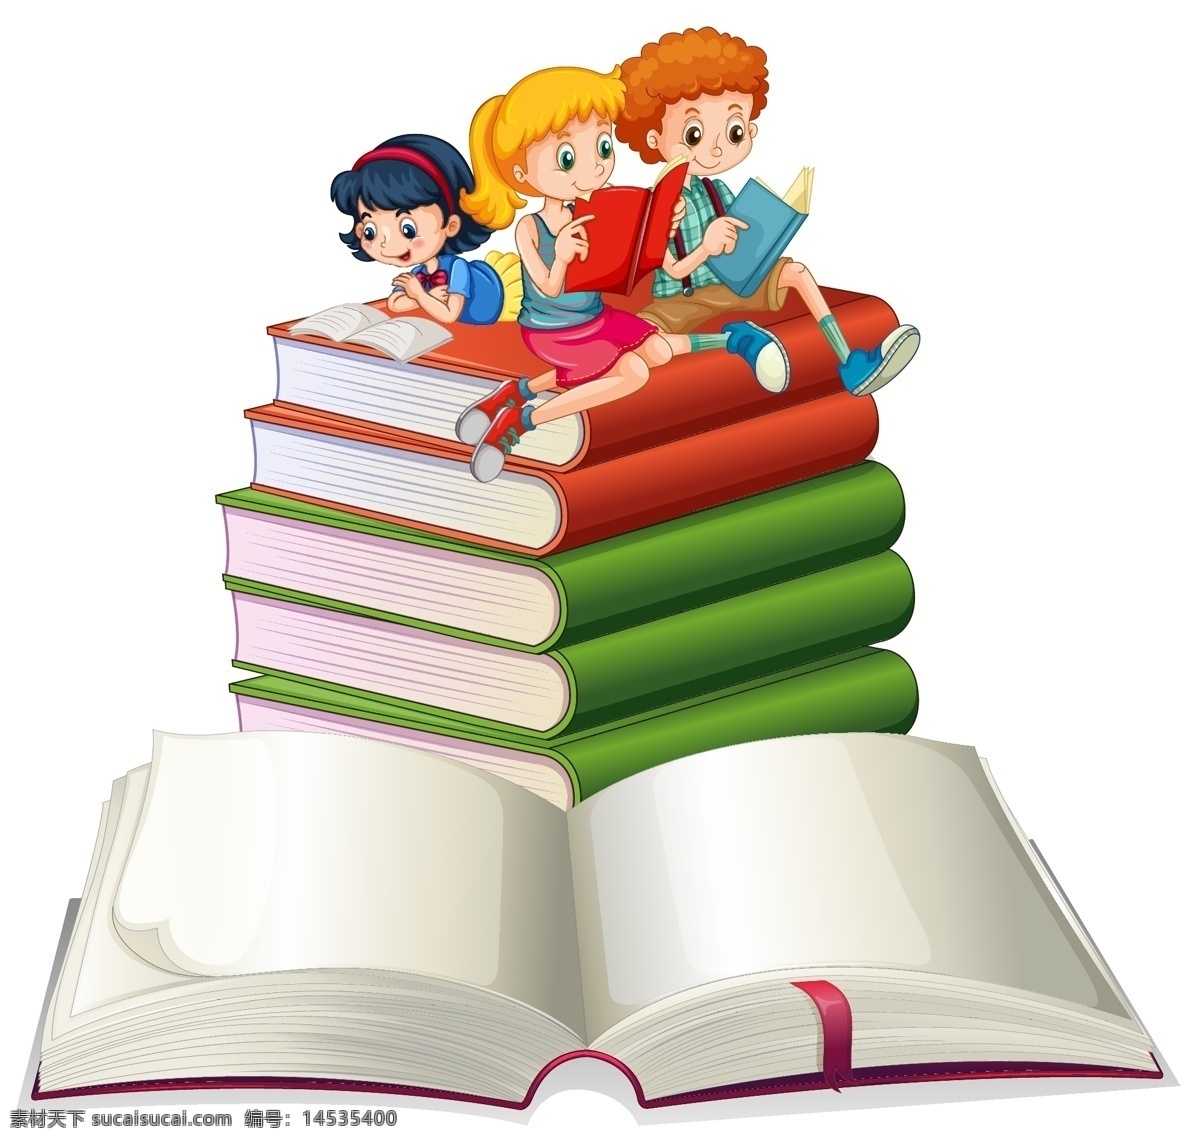 卡通学生 看书的孩子 看书 学生 儿童 快乐 在看书 女孩 男孩 小学生 阅读 认真 复习 预习 卡通儿童 卡通设计